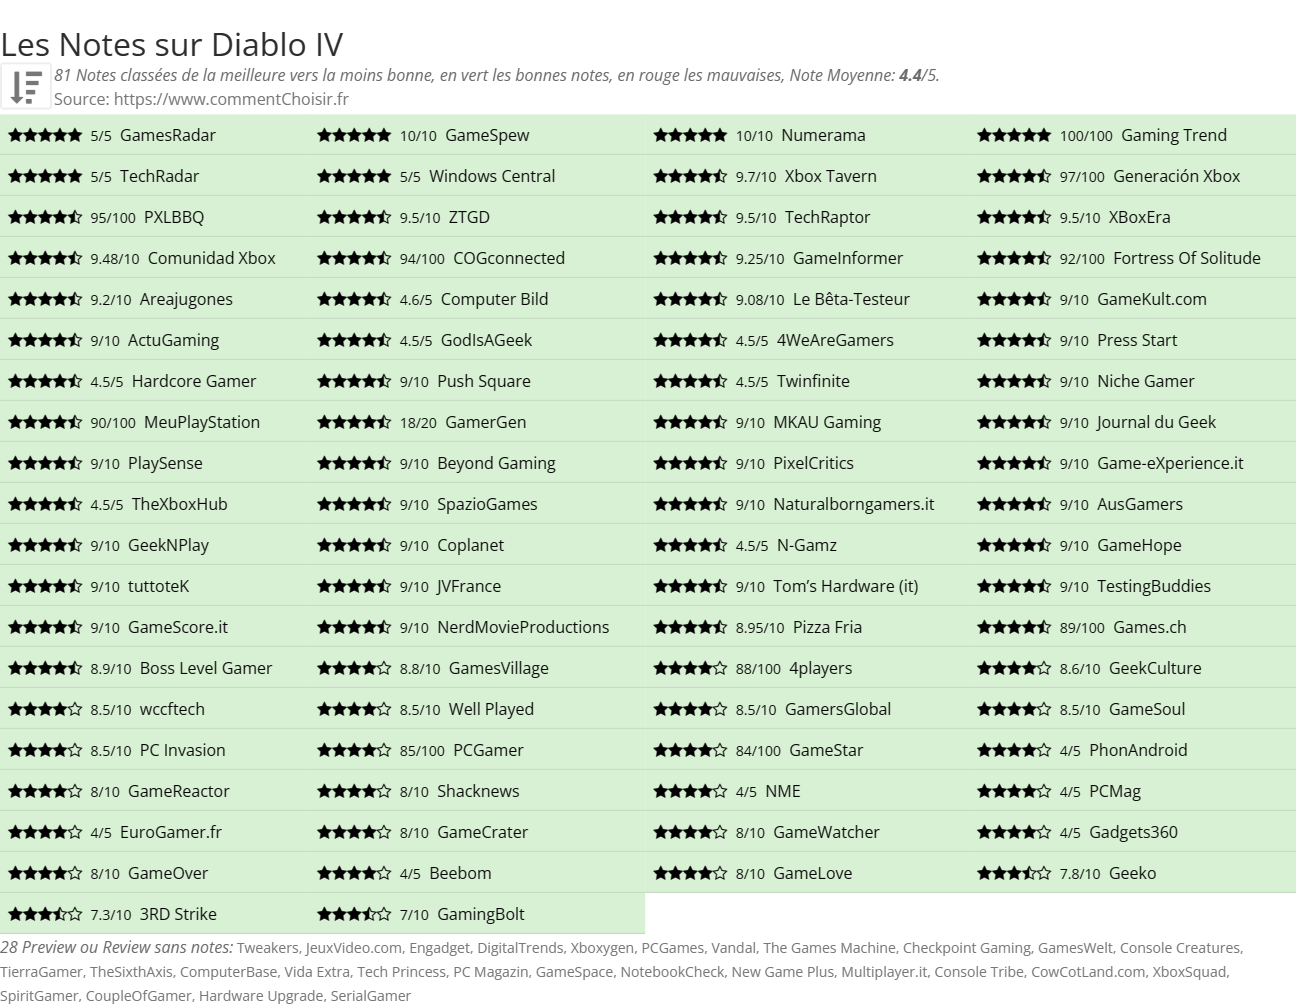 Ratings Diablo IV